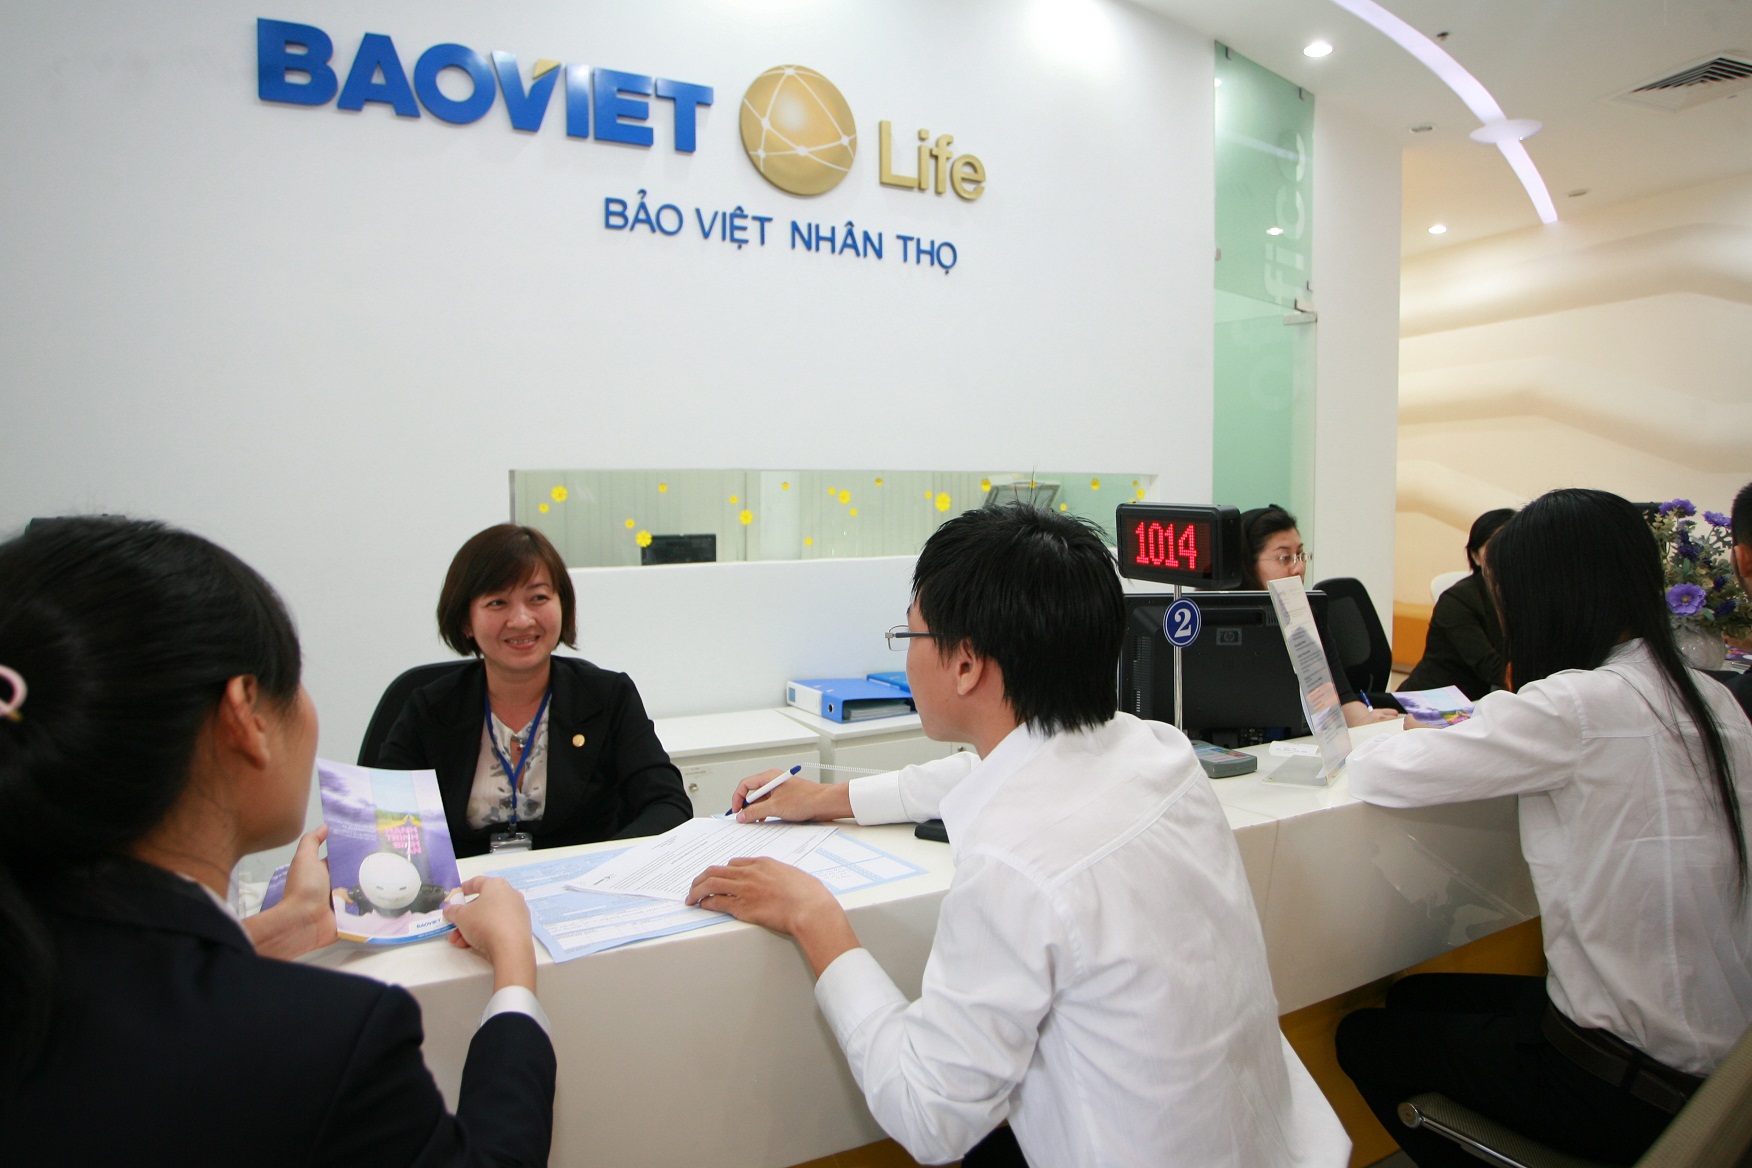 Lĩnh vực bảo hiểm nhân thọ của Bảo Việt đã đạt tốc độ tăng trưởng mạnh trong quý đầu năm 2016